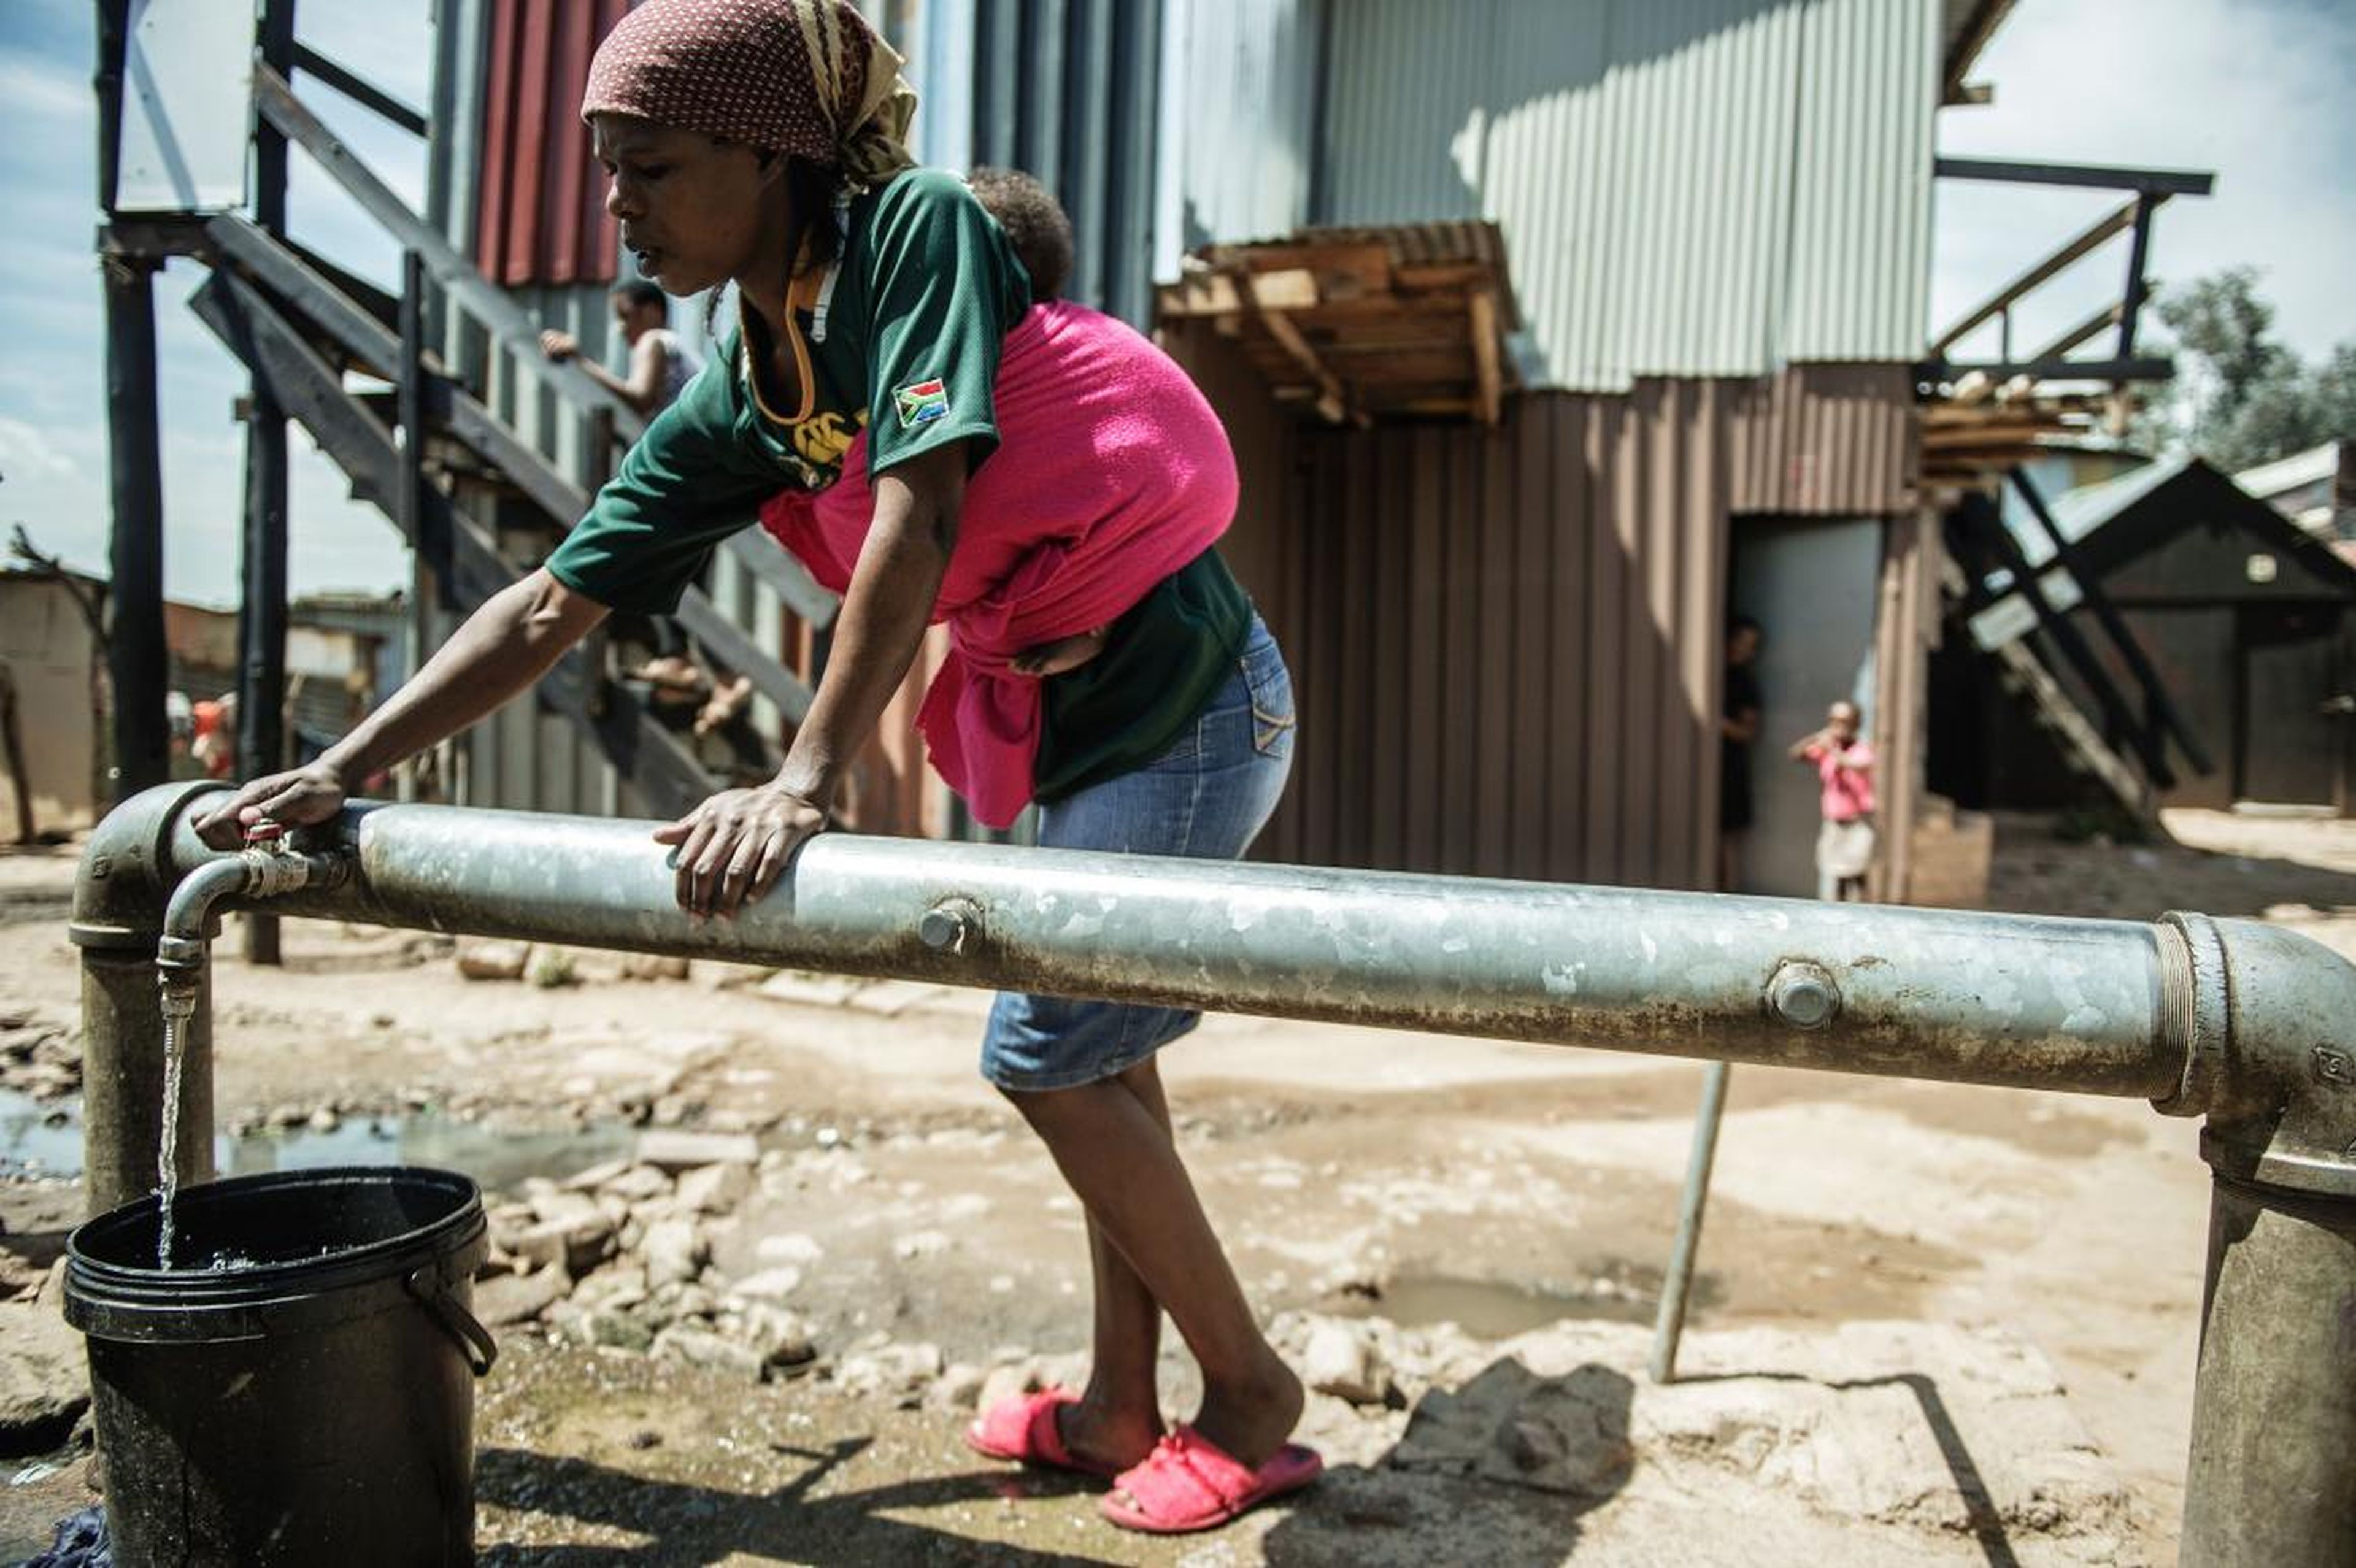 Una mujer recolecta agua de uno de los pocos grifos de agua comunales disponibles para las miles de personas que viven en el asentamiento informal Zandspruit en Johannesburgo, Sudáfrica.